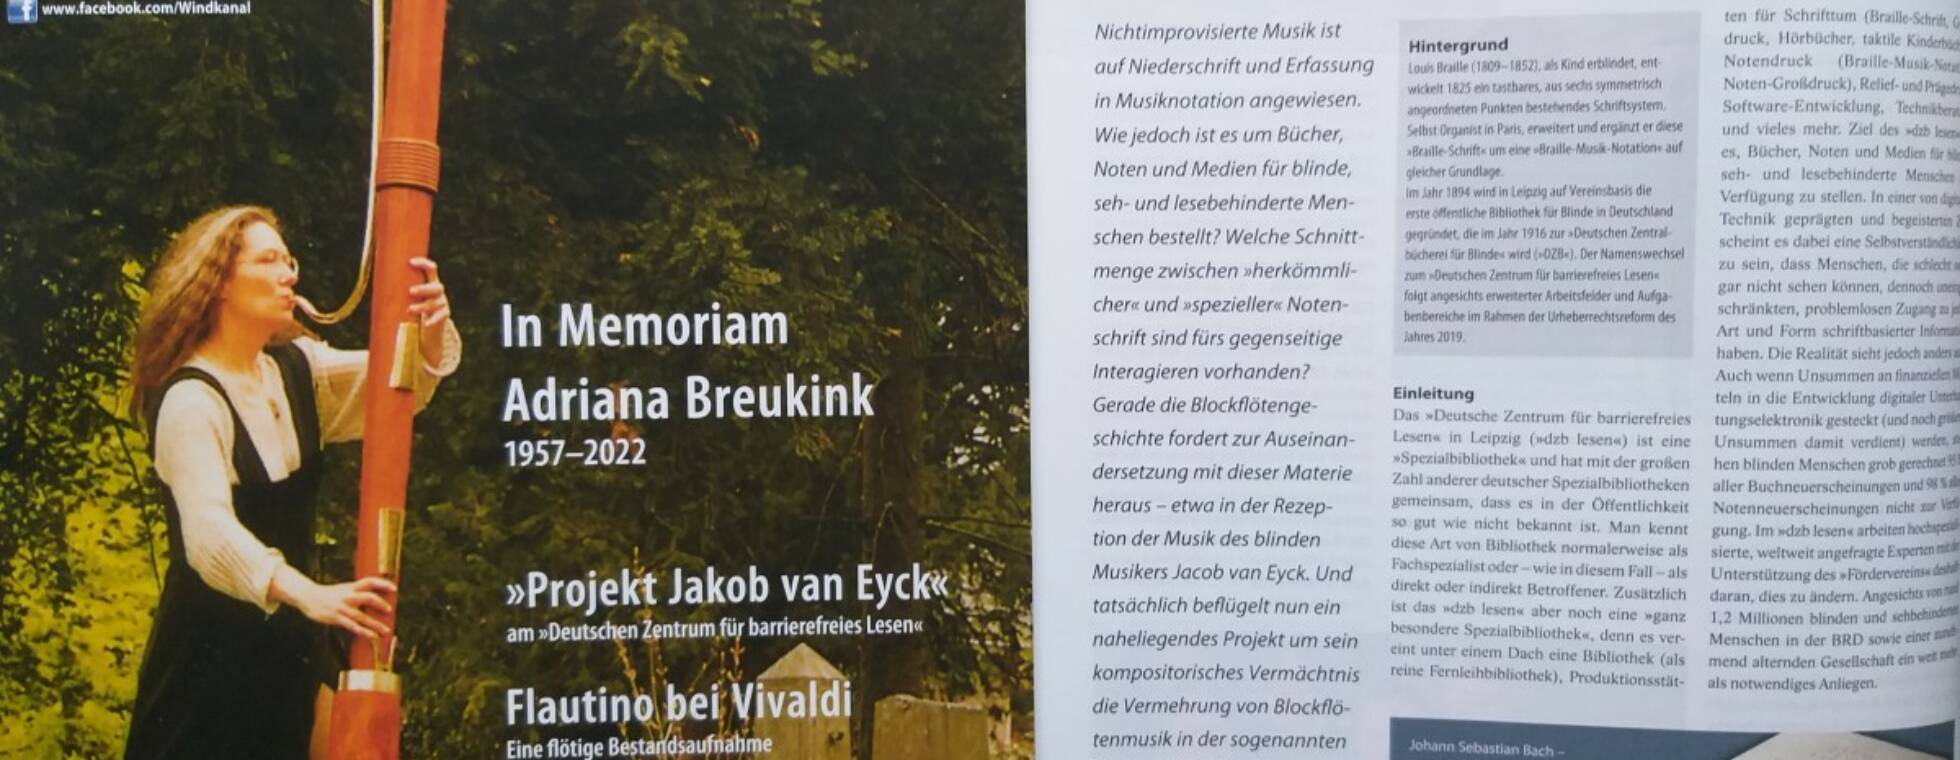 Cover des Magazins Windkanal und die aufgeschlagene Seite des Artikels "Das Projekt Jacob van Eyck"